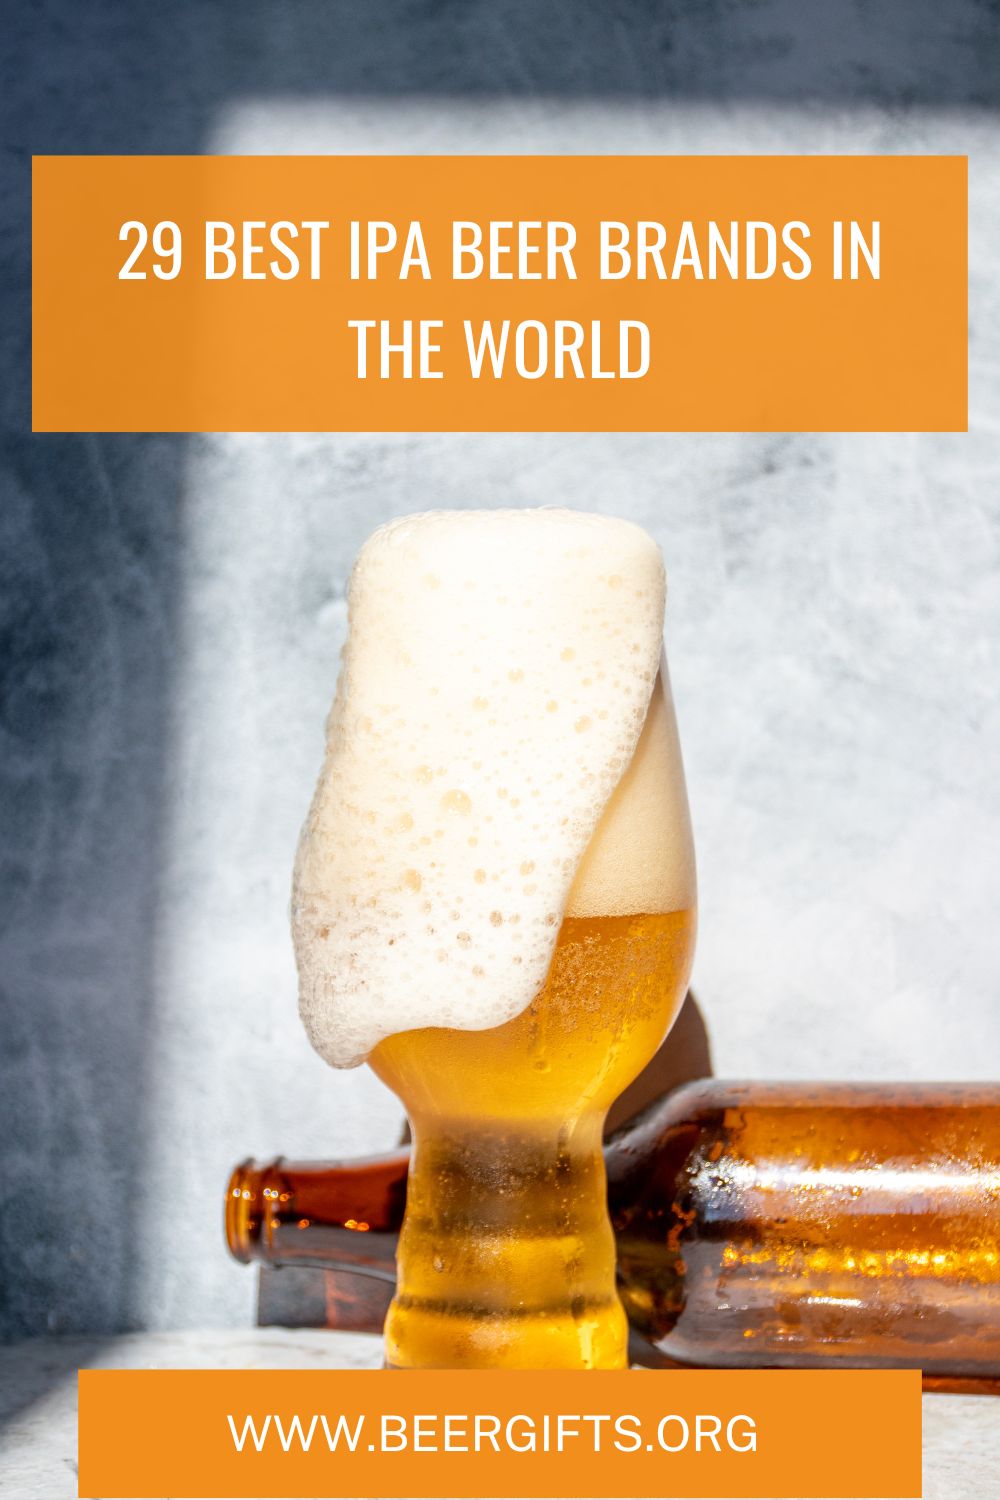 29 Best IPA Beer Brands In the World31